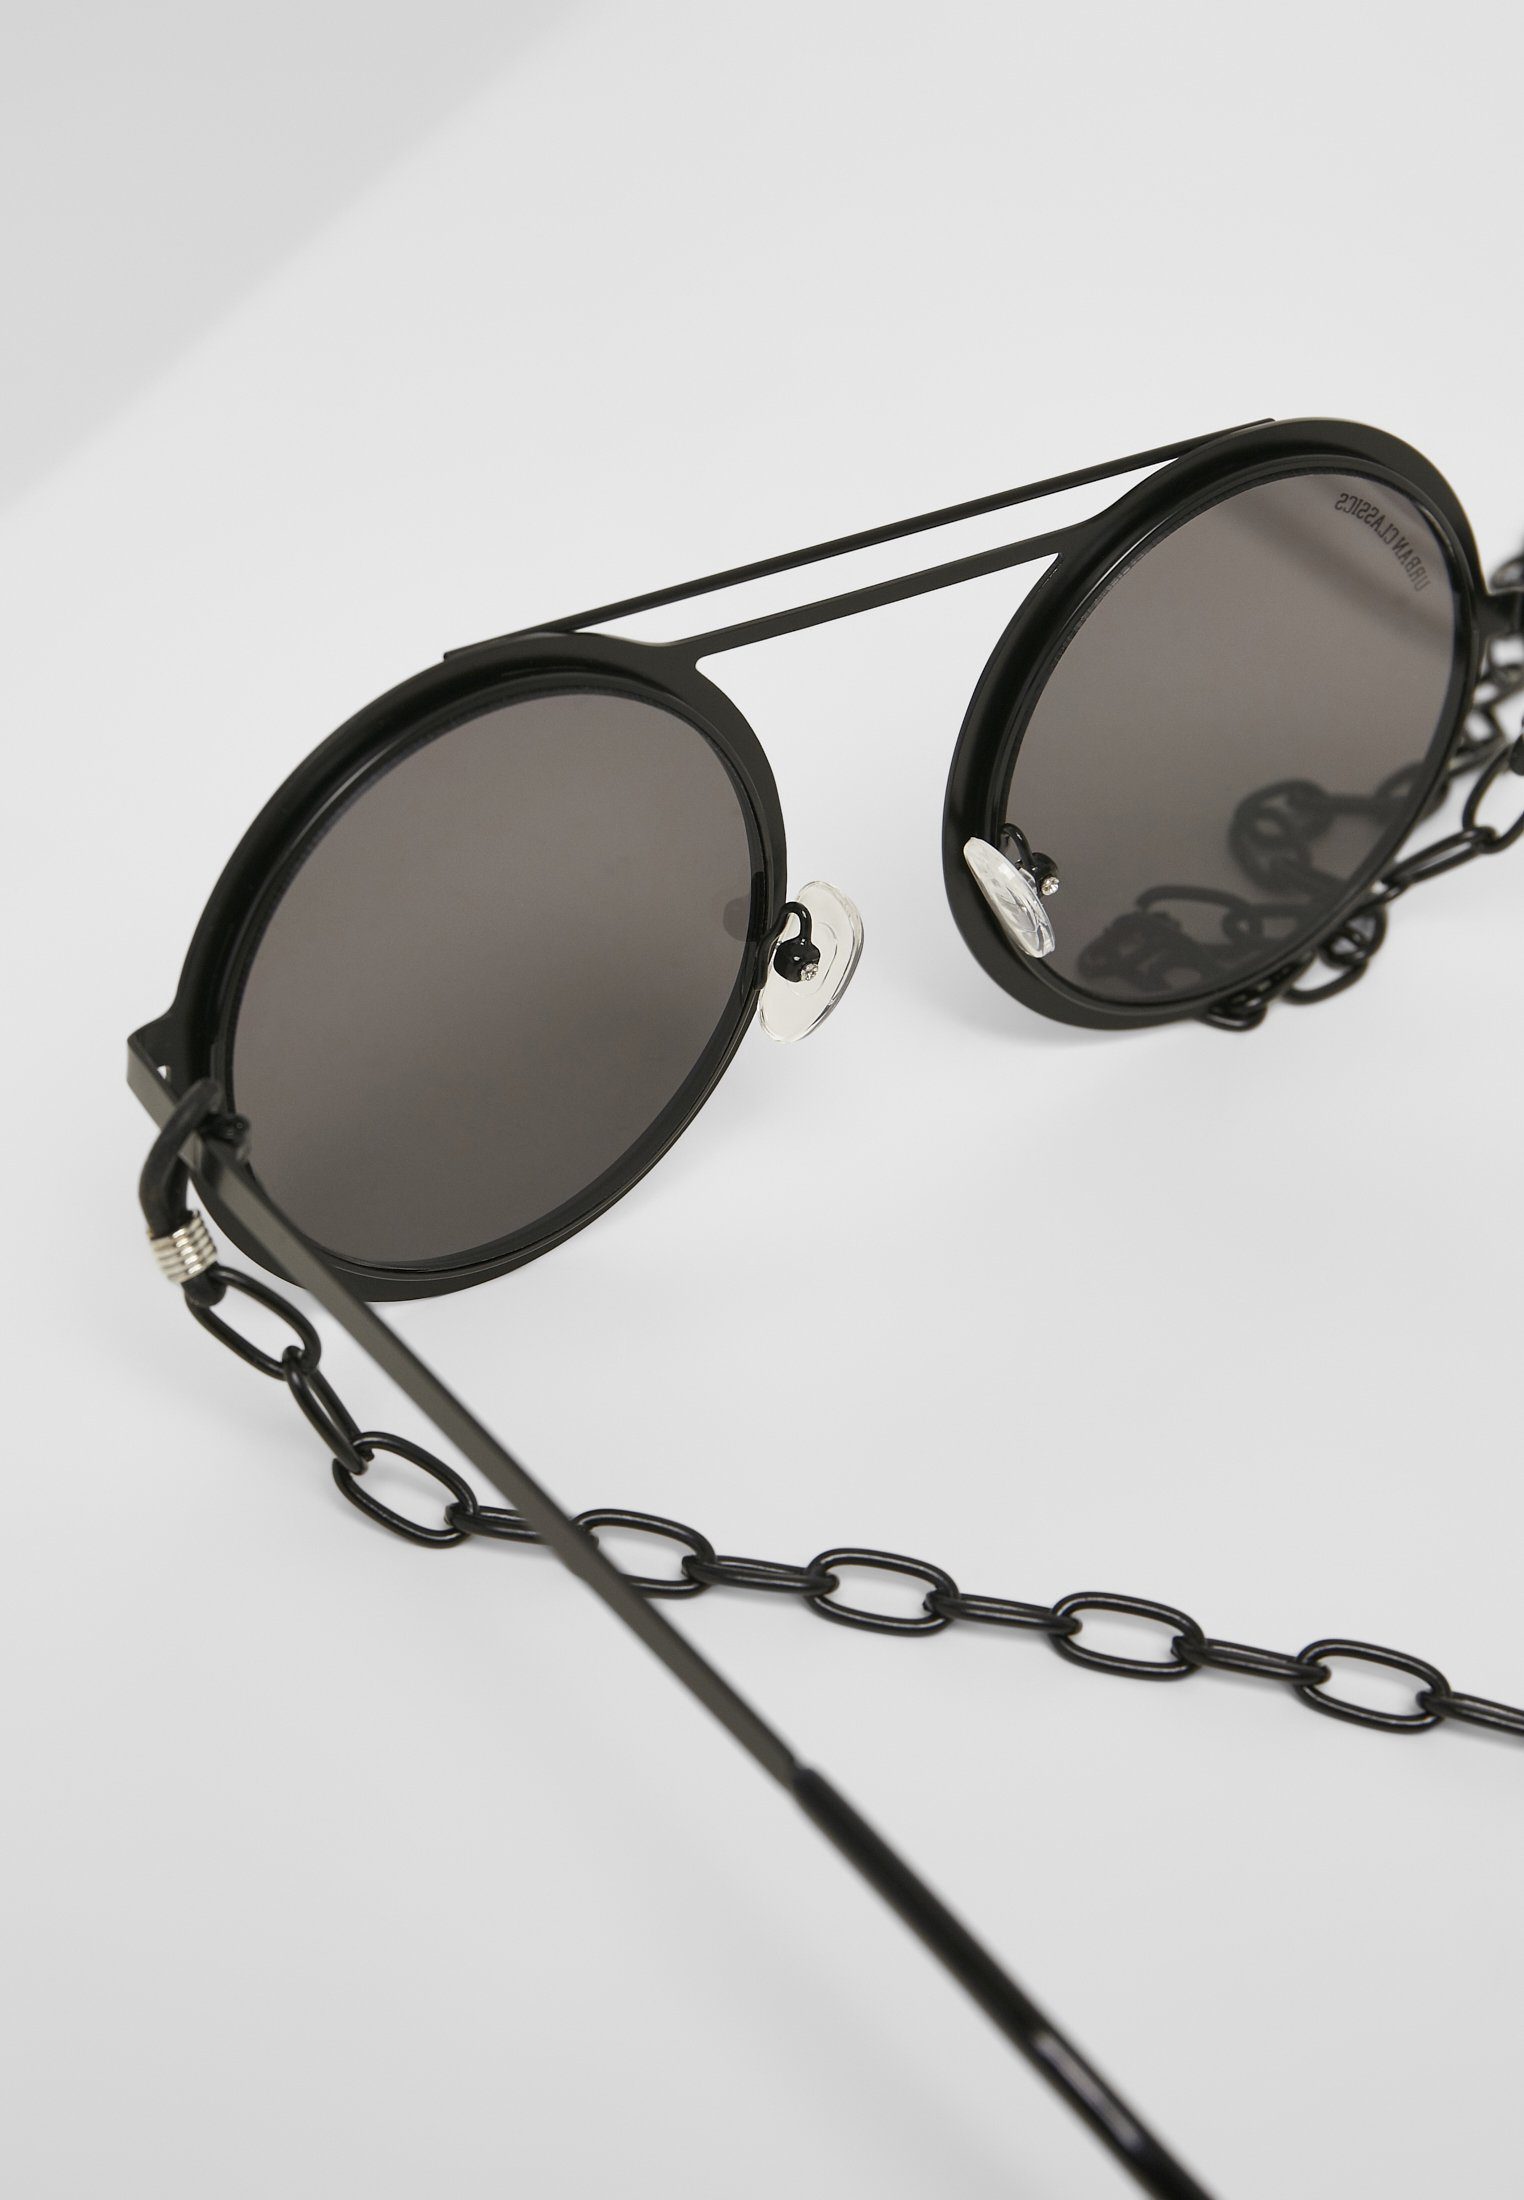 Sonnenbrille 104 mirror/black silver Unisex Chain CLASSICS URBAN Sunglasses